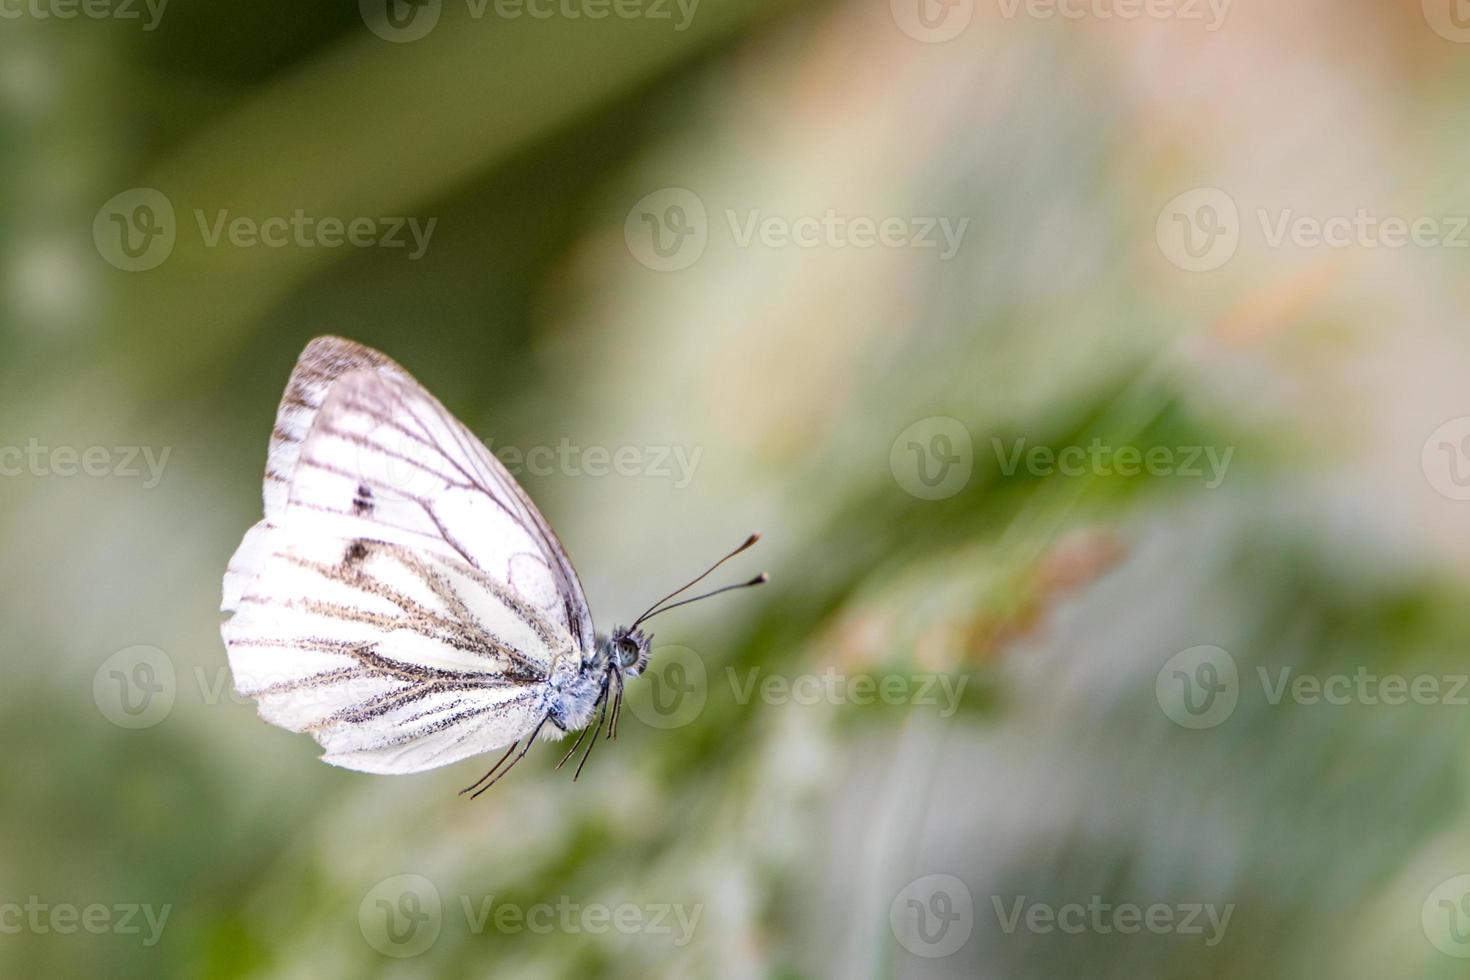 borboleta branca voando na frente de um fundo verde desfocado foto